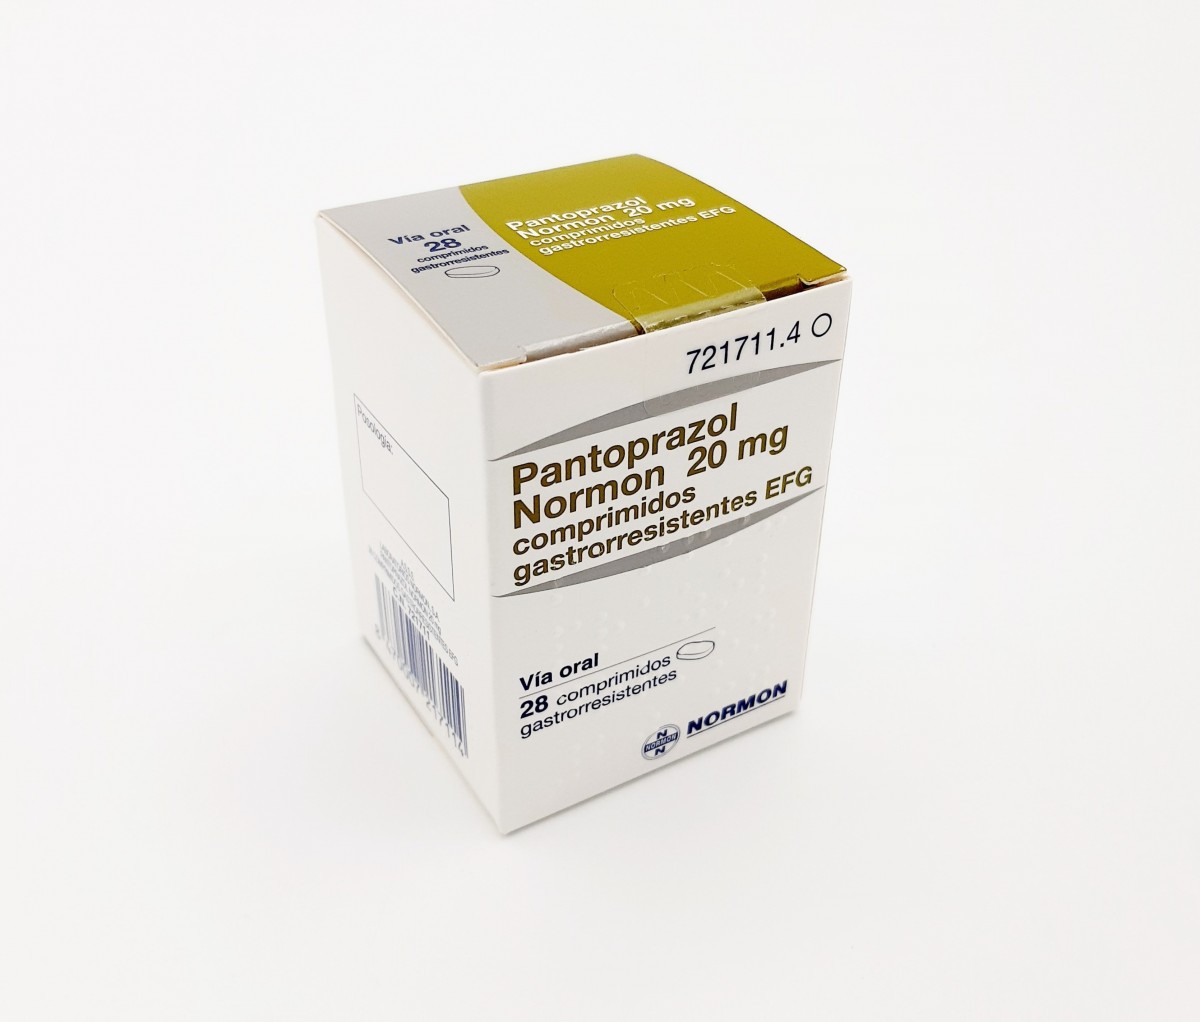 PANTOPRAZOL NORMON 20 mg COMPRIMIDOS GASTRORRESISTENTES EFG, 28 comprimidos (Frasco) fotografía del envase.